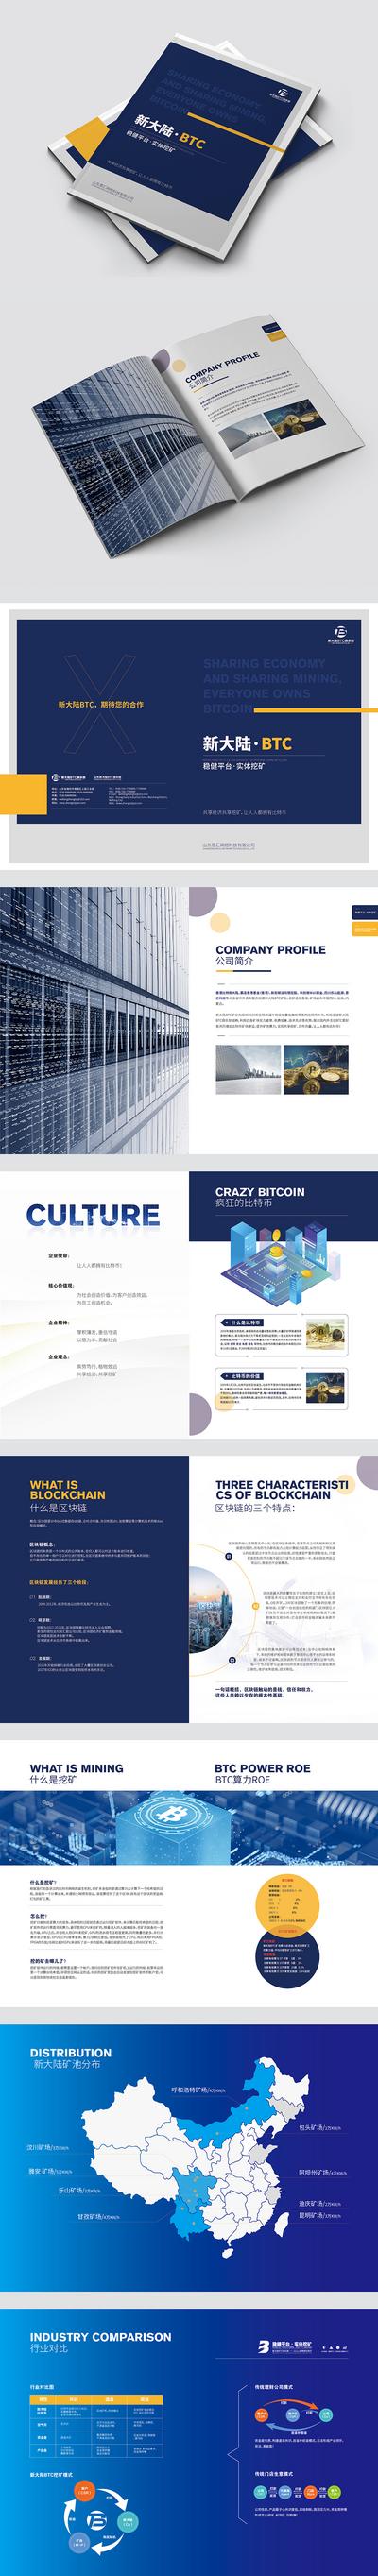 南门网 画册 宣传册 手册 企业 虚拟货币 宣传 地图